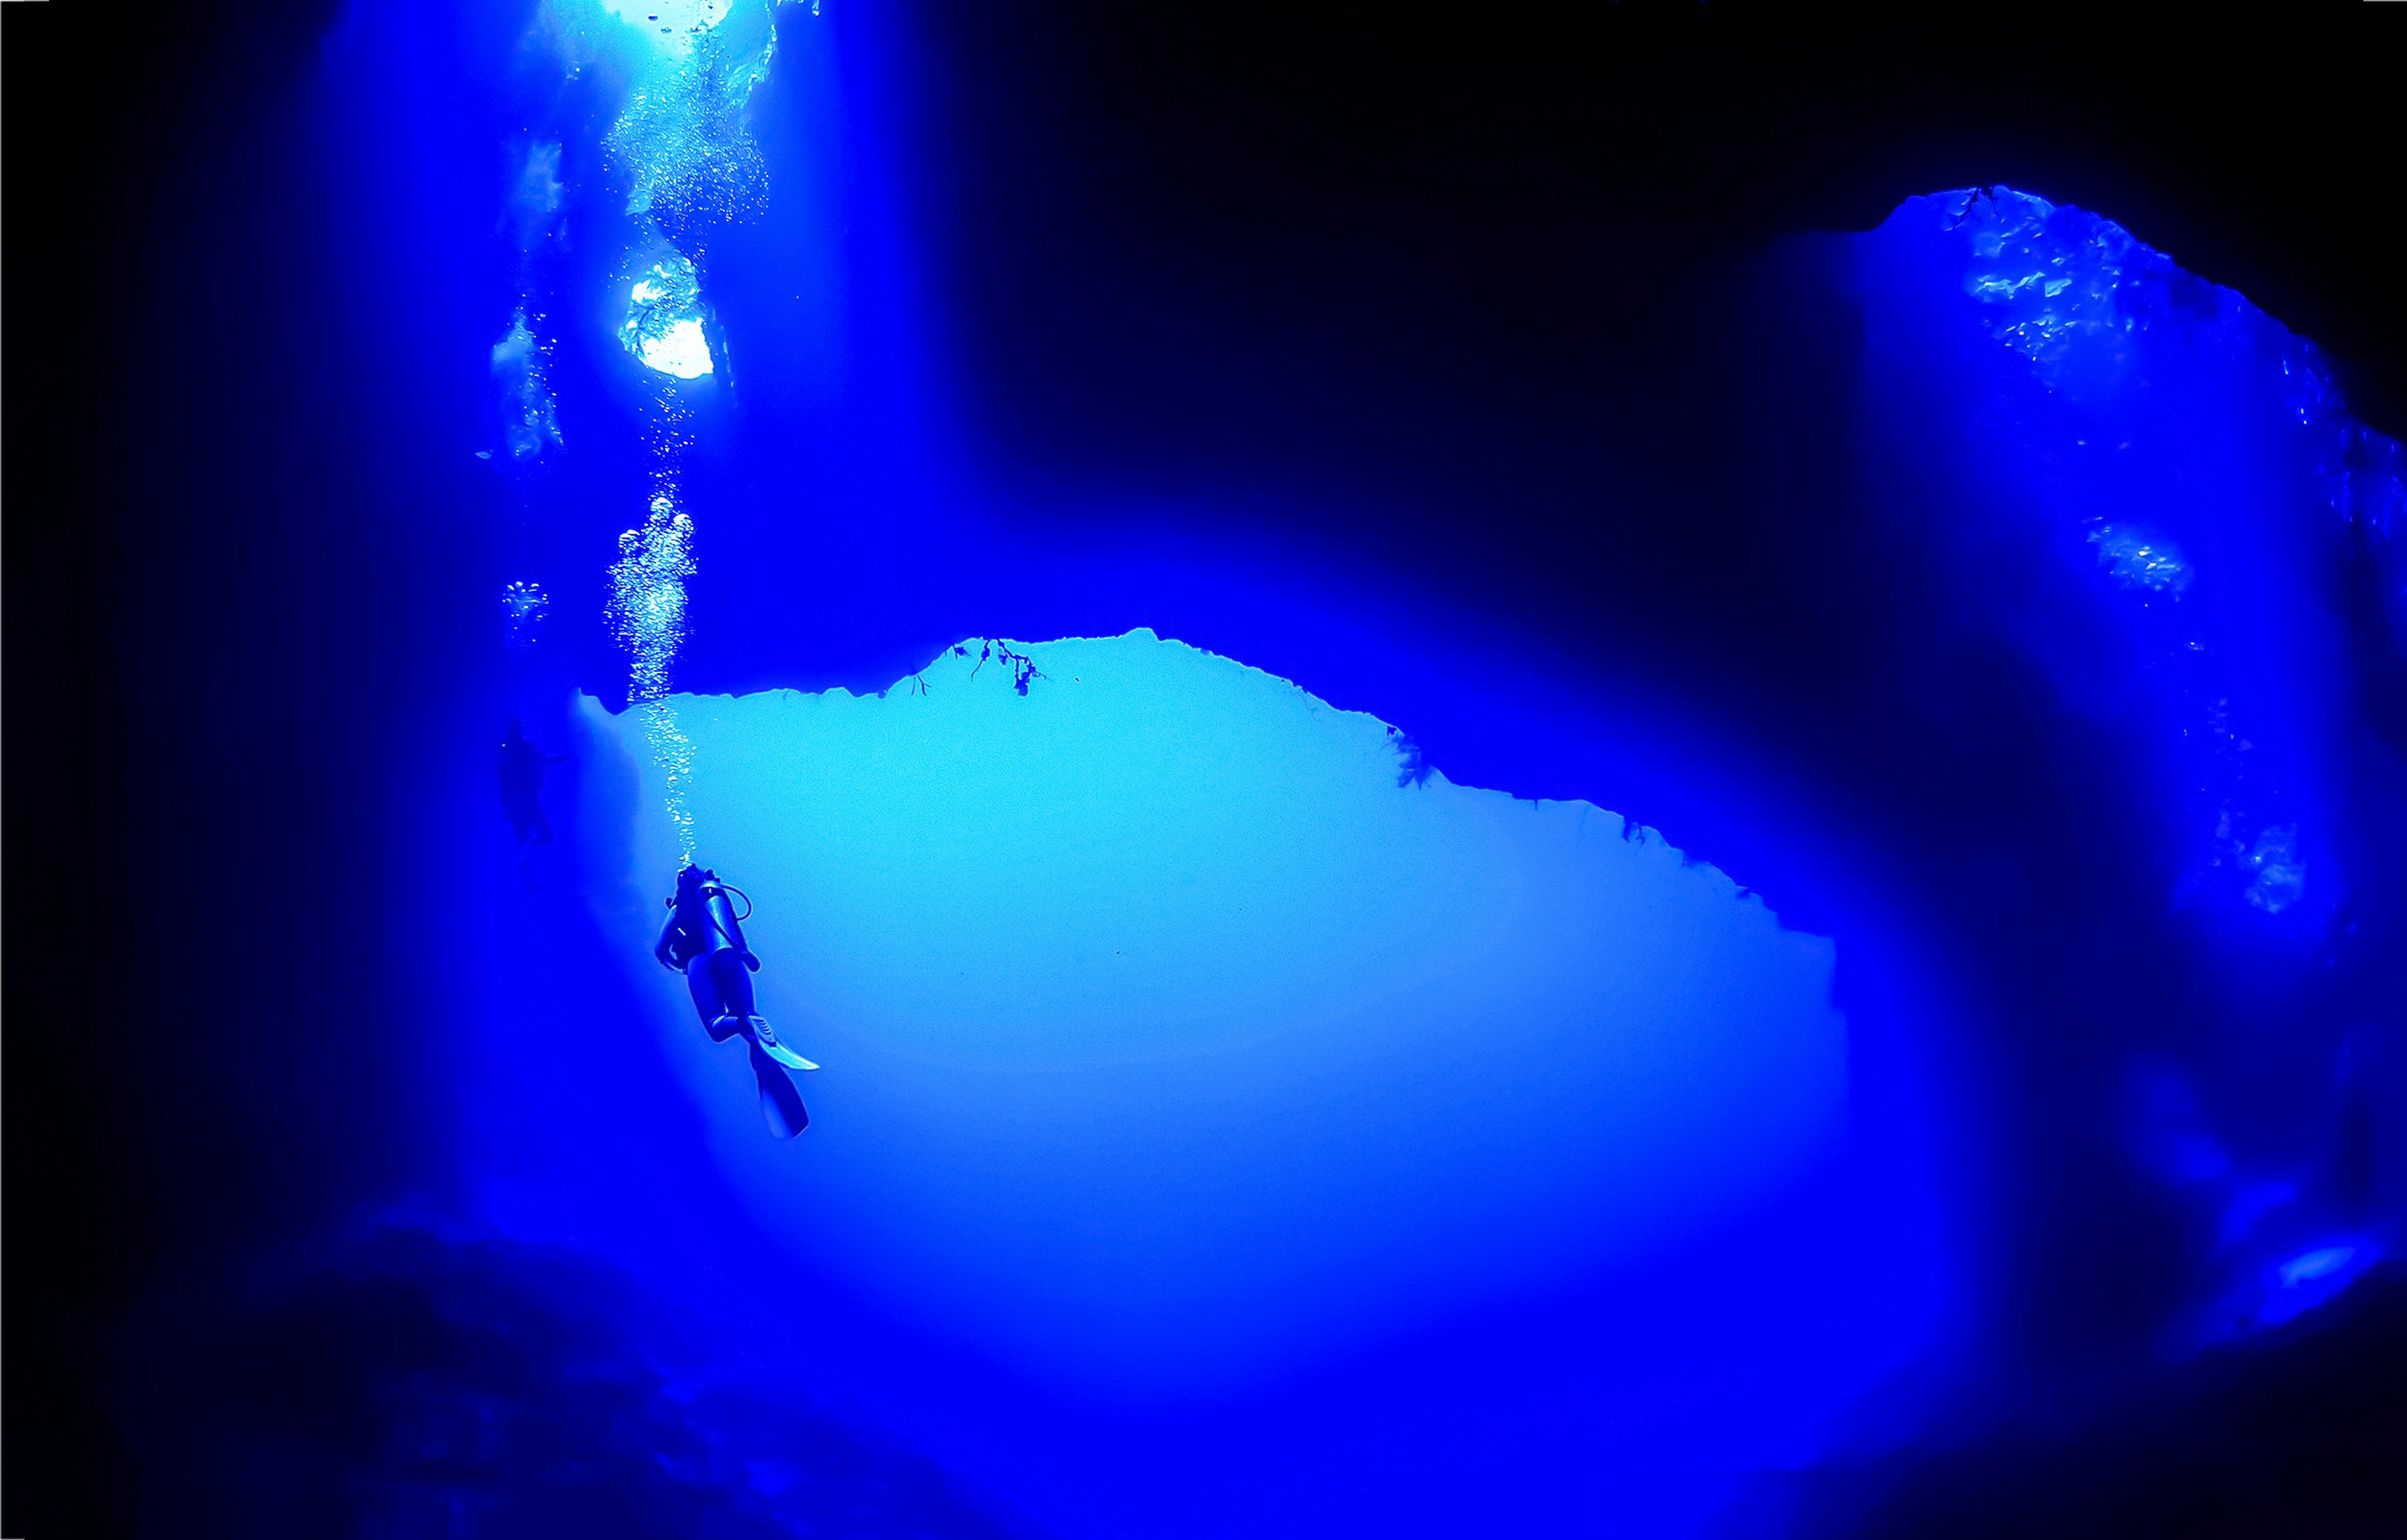 Il percorso di ogni persona per superare la paura delle acque profonde è unico e può richiedere tempi diversi. Uno dei modi per smettere di avere paura degli abissi è l'immersione.